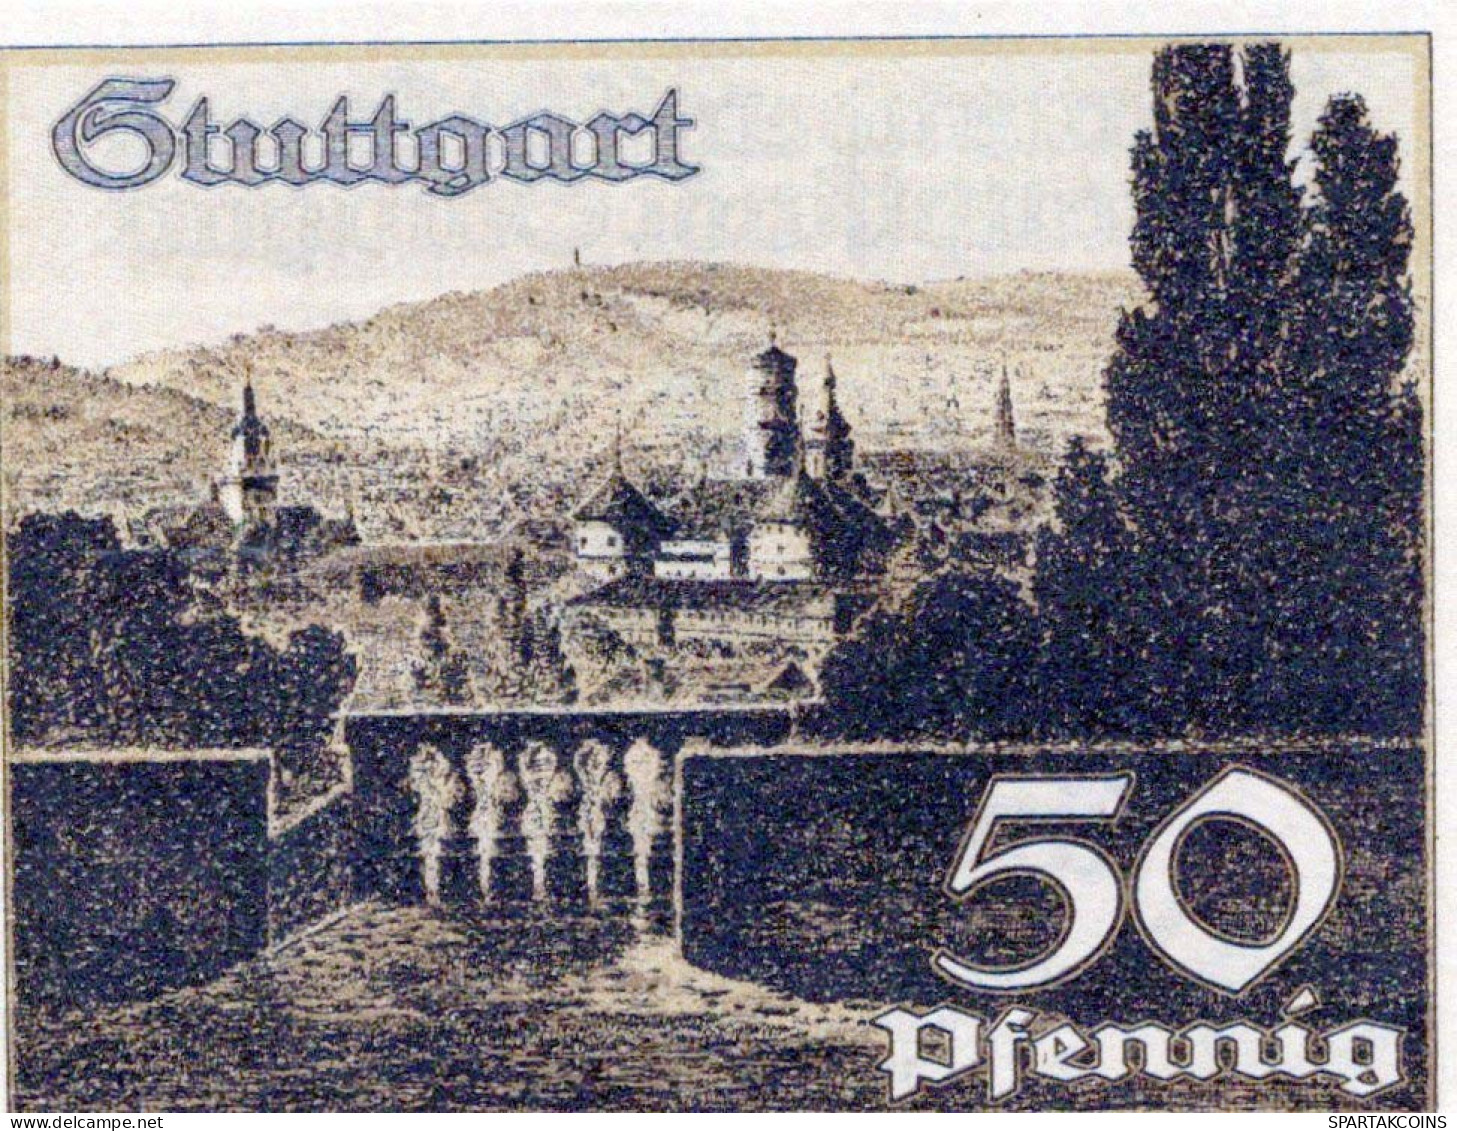 50 PFENNIG 1921 Stadt STUTTGART Württemberg UNC DEUTSCHLAND Notgeld #PC414 - [11] Lokale Uitgaven